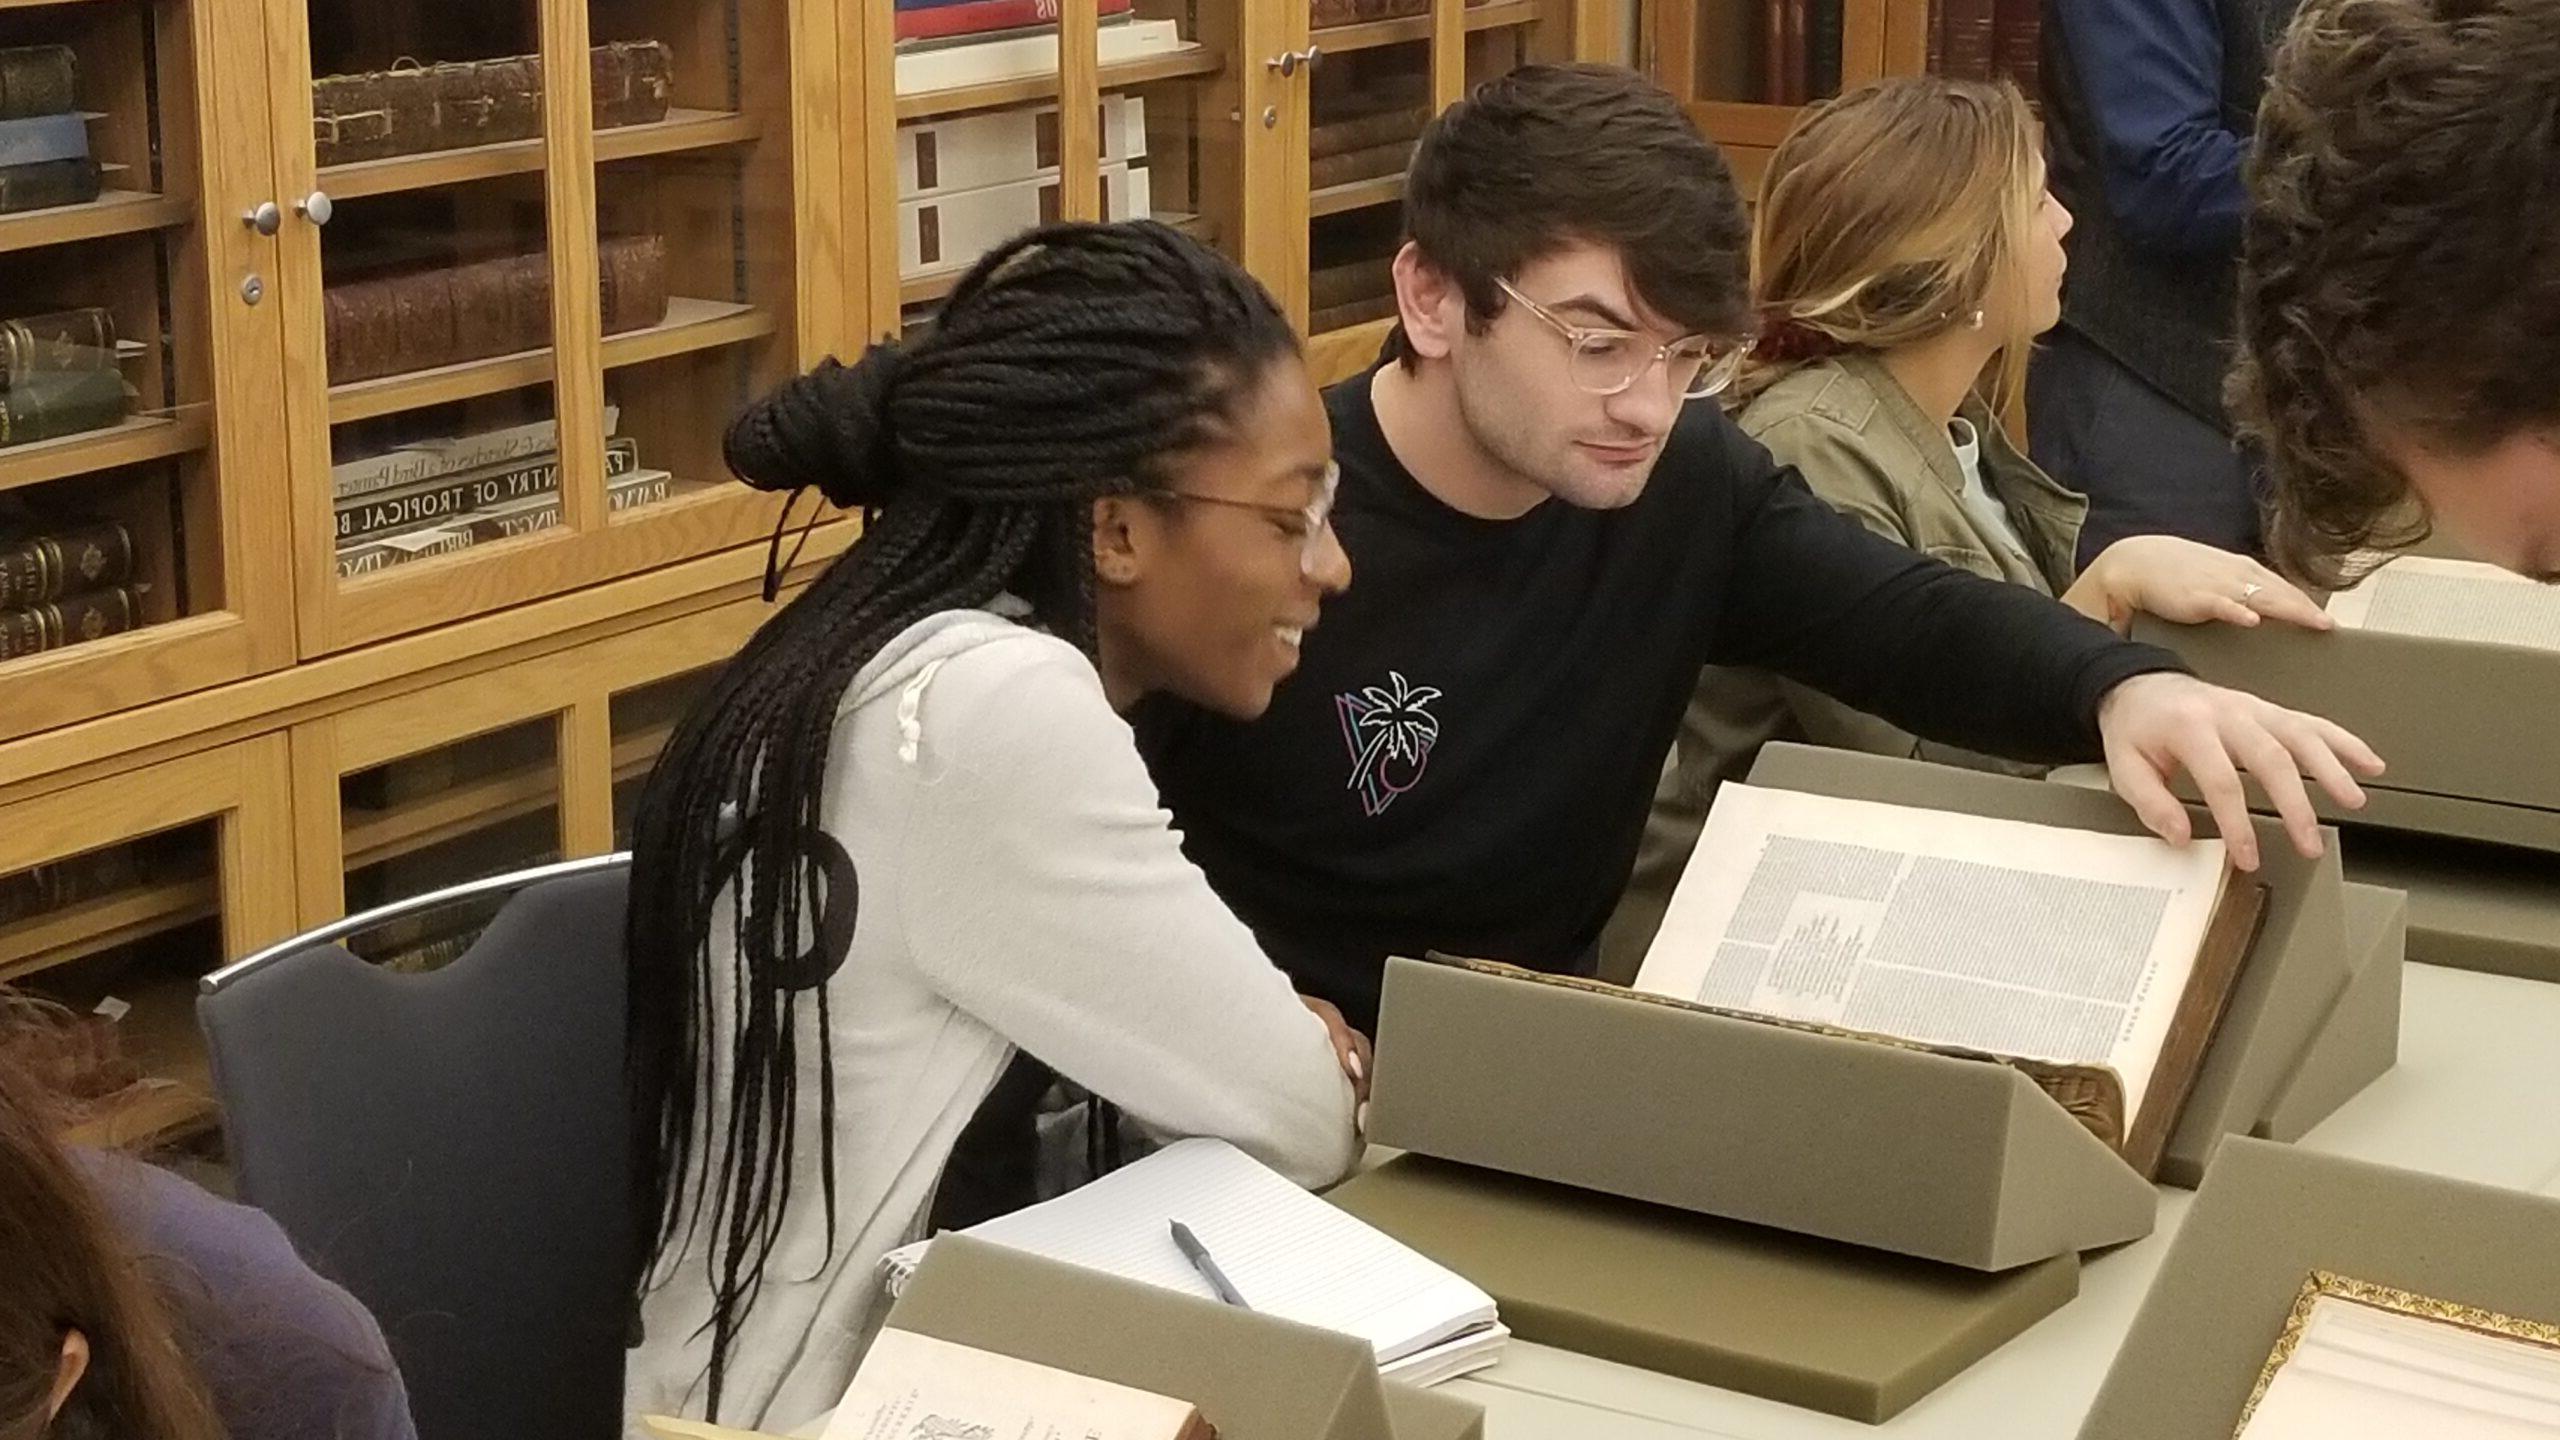 男学生和女学生在沃特金森图书馆的研讨室里看珍本图书